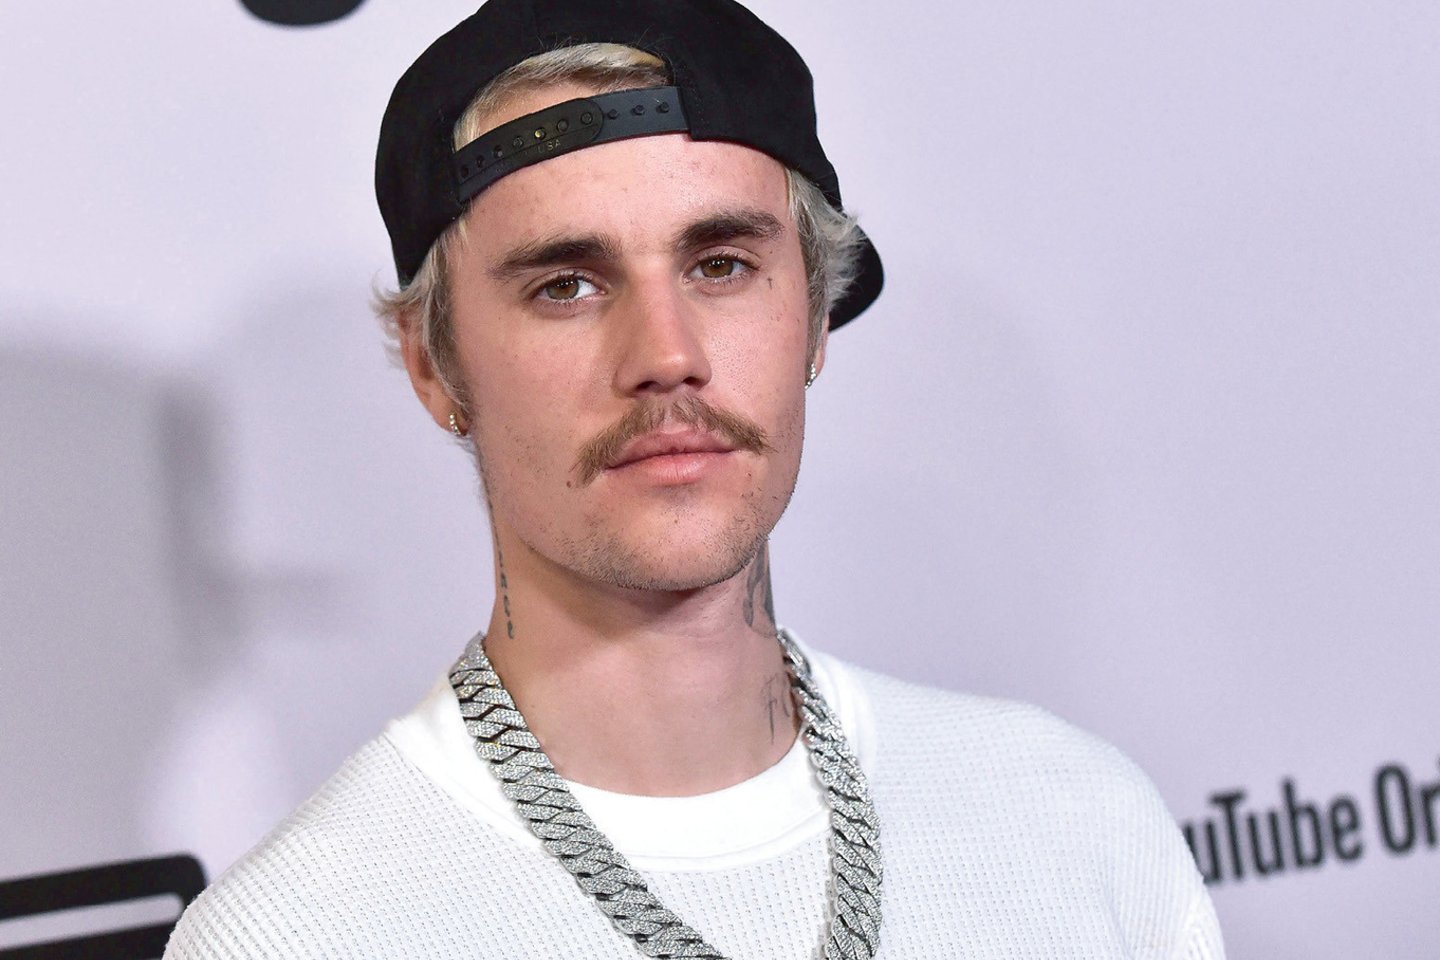 Savo gerbėjams J.Bieberis atskleidė, kad dešinė veido pusė yra visiškai paralyžiuota. Jis netgi atliko tam tikrus veido judesius, bet buvo akivaizdu, kad viena veido pusė yra sustingusi kaip akmuo.<br>Scanpix/AFP nuotr.